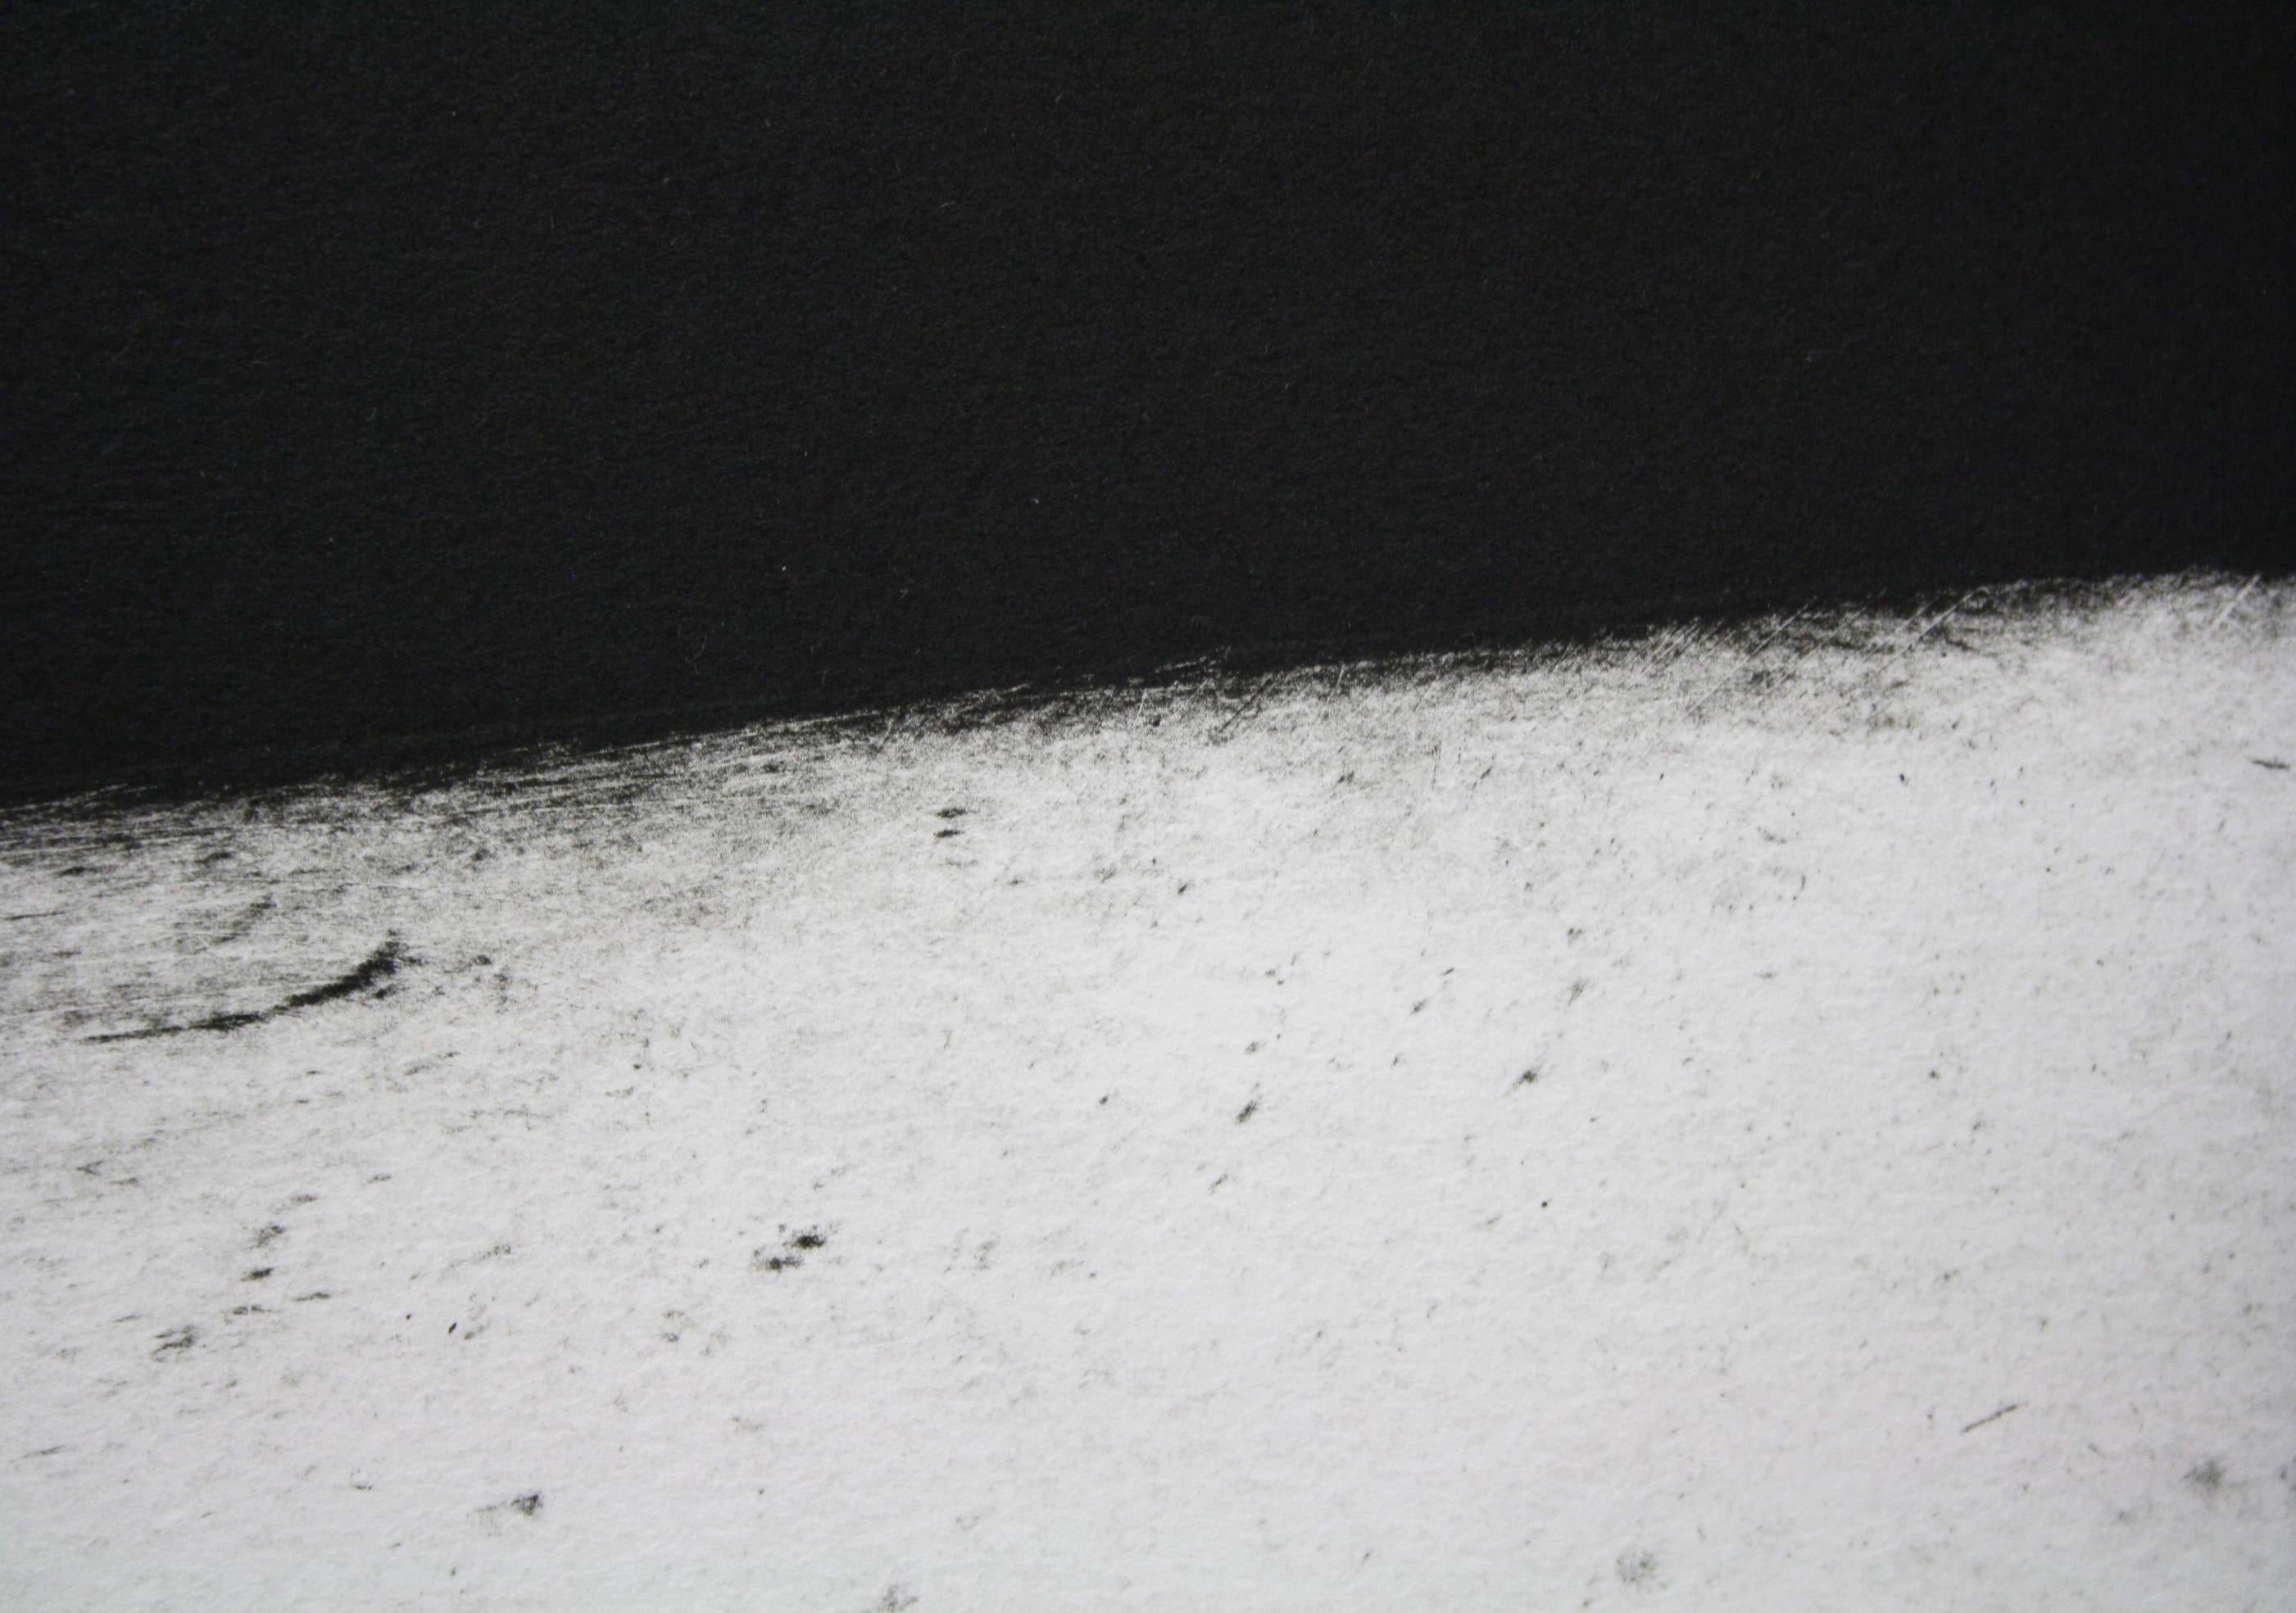 191j24017 (Abstrakter Druck)

Gravur / Karborundum auf Zink gedruckt auf BKF-Papier 250 g - Ungerahmt.

Seit 2010 hat Pierre Muckensturm die Druckgrafik in sein Werk aufgenommen.

Das Gravur- und Druckverfahren ermöglicht es ihm, seine Vorstellungen